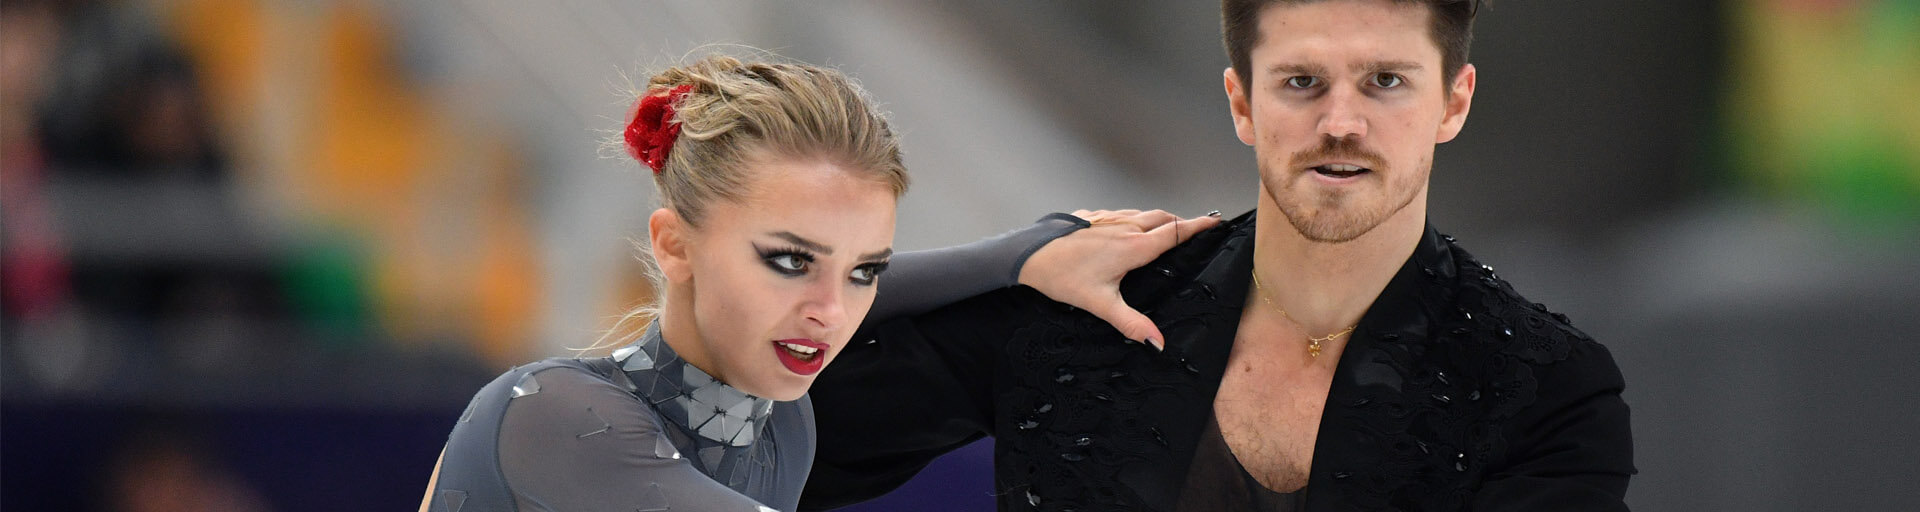 Лучшие танцоры на льду России могут не попасть на ОИ 2022